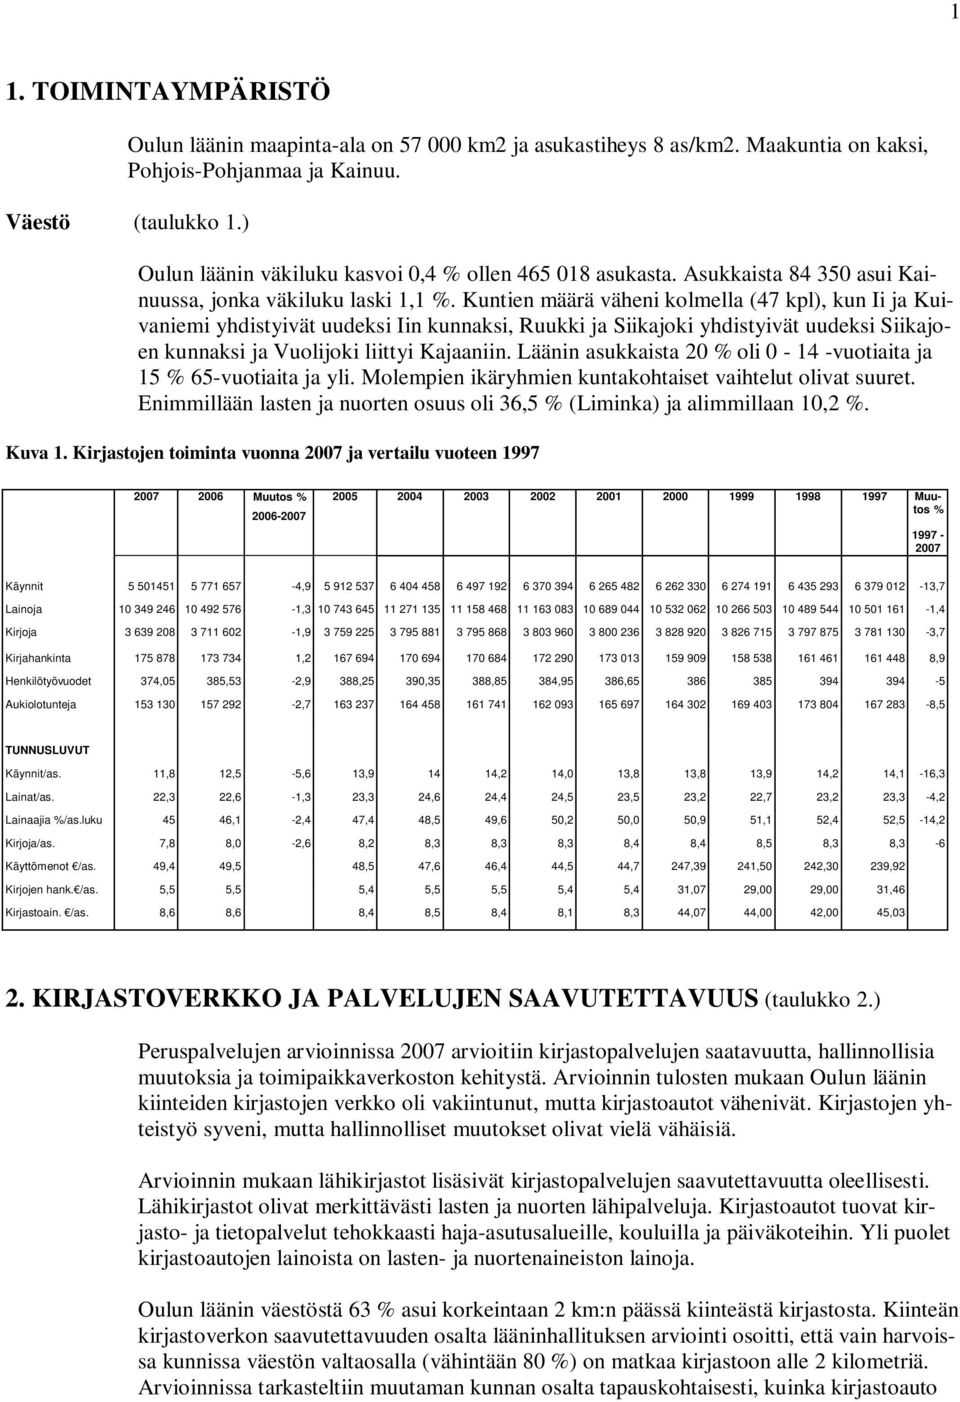 Kuntien määrä väheni kolmella (47 kpl), kun Ii ja Kuivaniemi yhdistyivät uudeksi Iin kunnaksi, Ruukki ja Siikajoki yhdistyivät uudeksi Siikajoen kunnaksi ja Vuolijoki liittyi Kajaaniin.